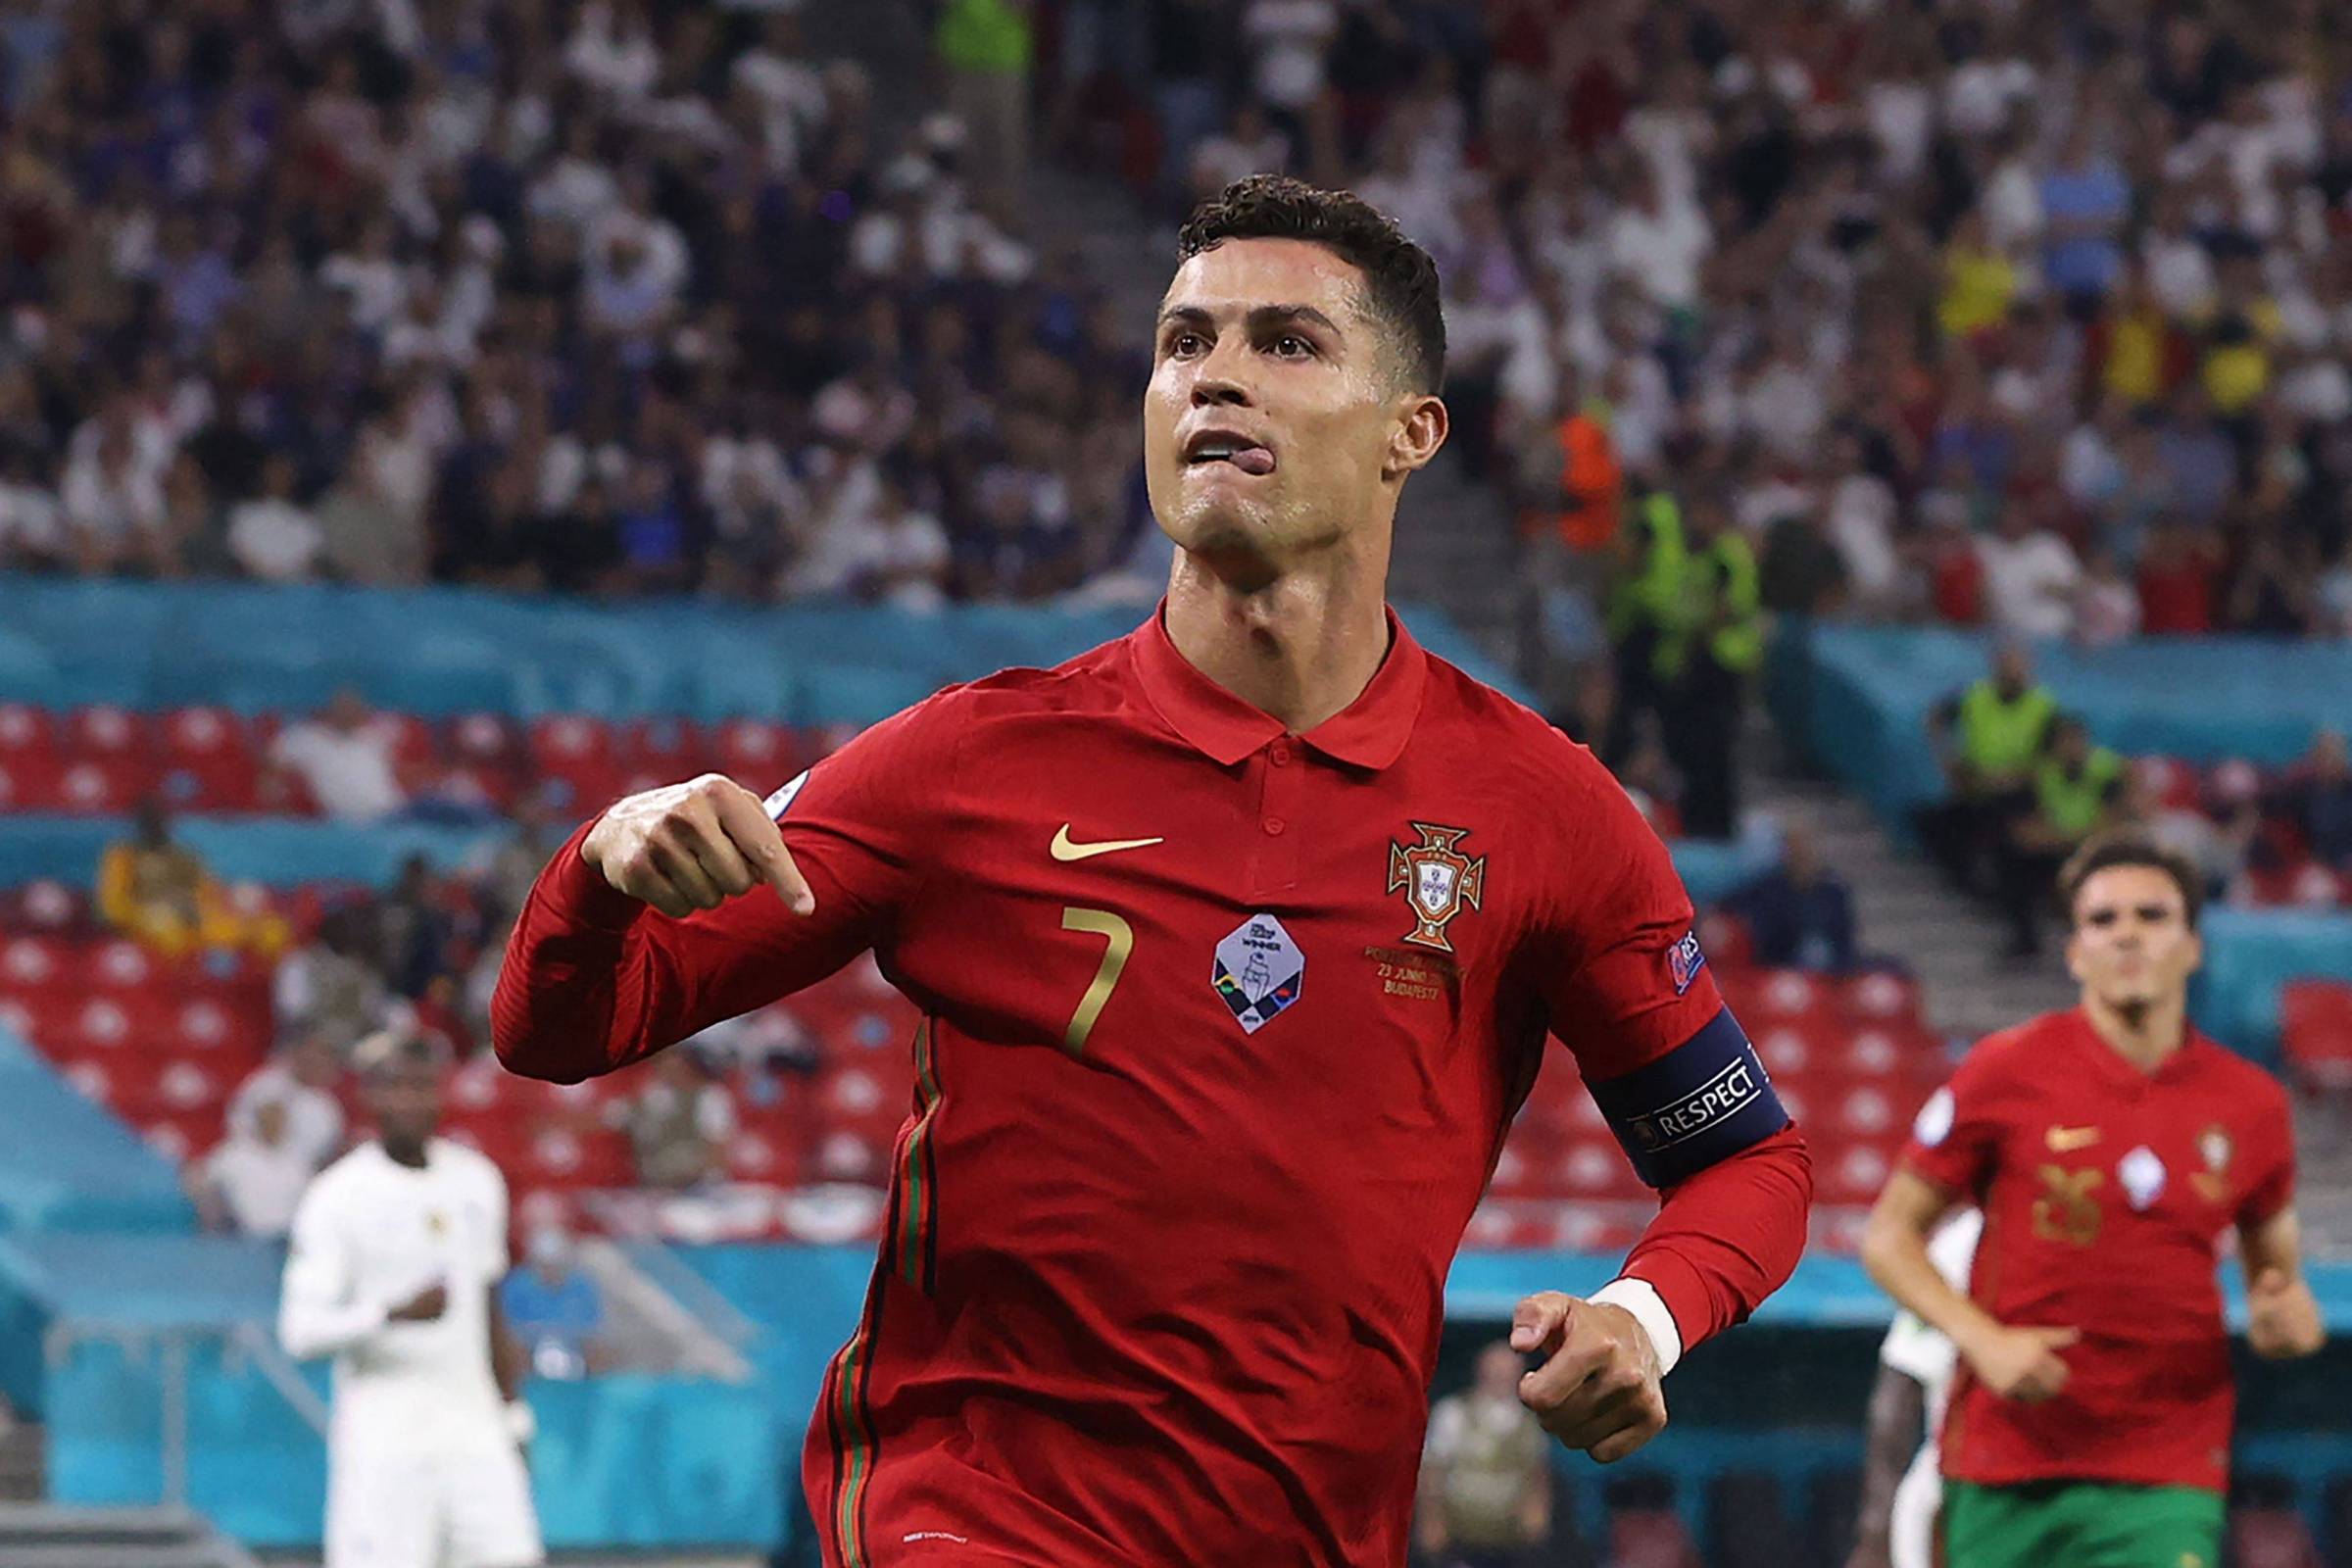 Profecia da Eurocopa“ coloca Portugal como campeão da Copa do Mundo de 2022